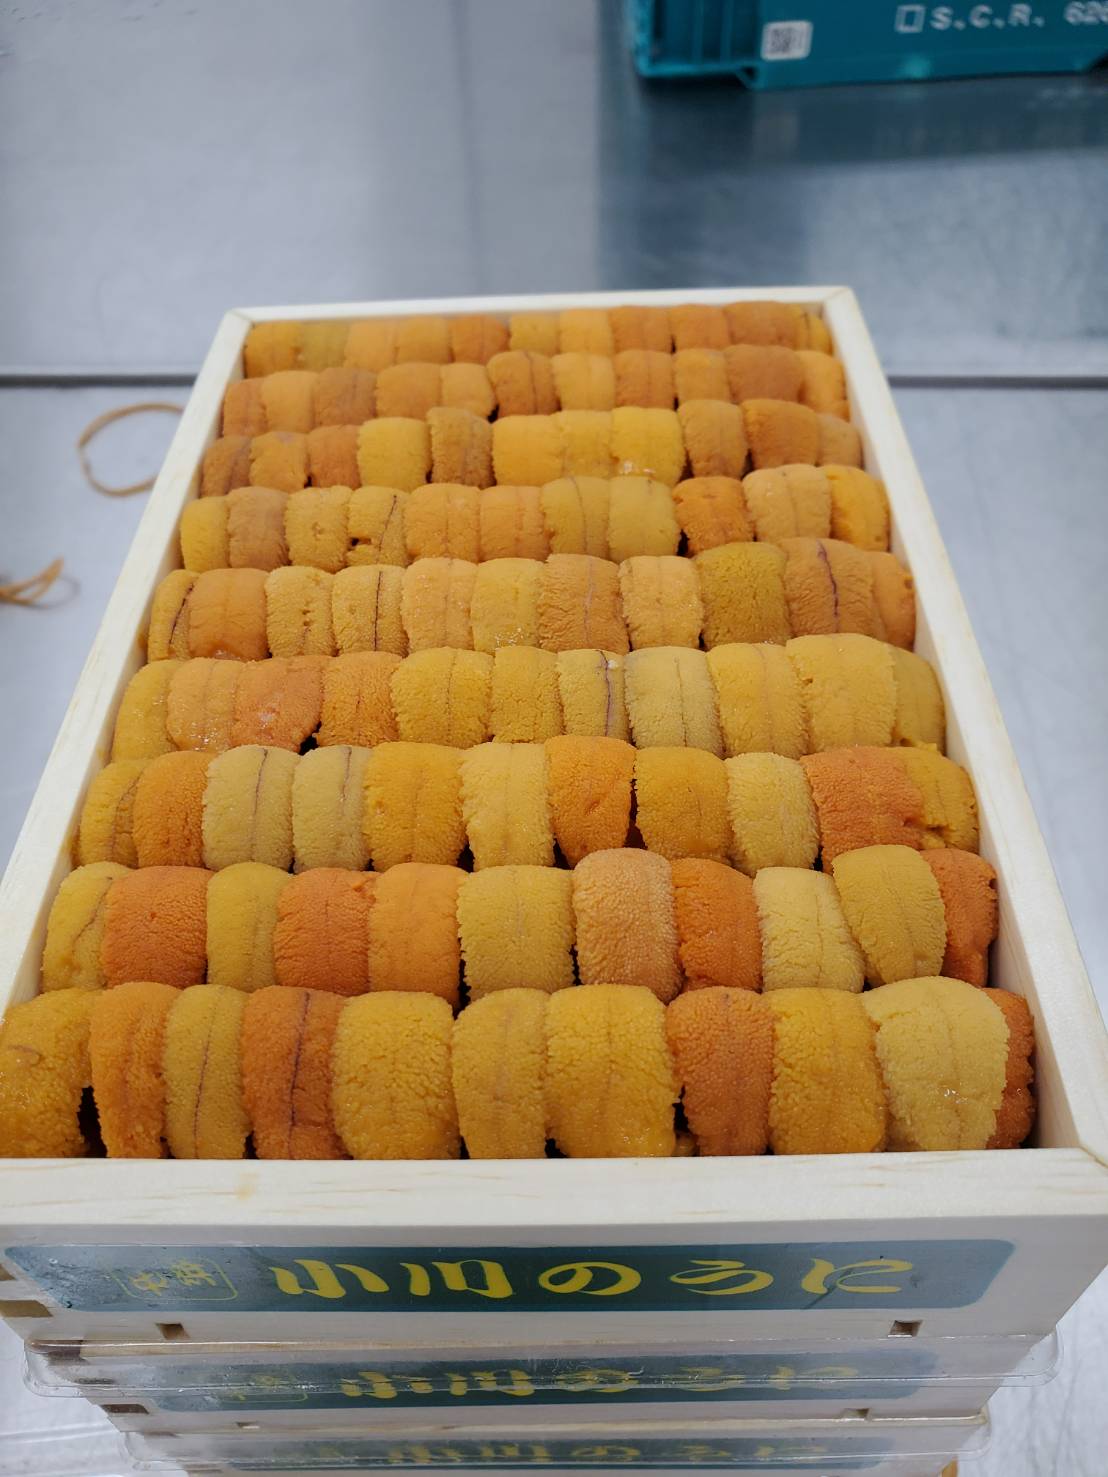 Uni Red Sea Urchin Premium from Hokkaido300g-400g box 豊洲直送!北海道産生うに